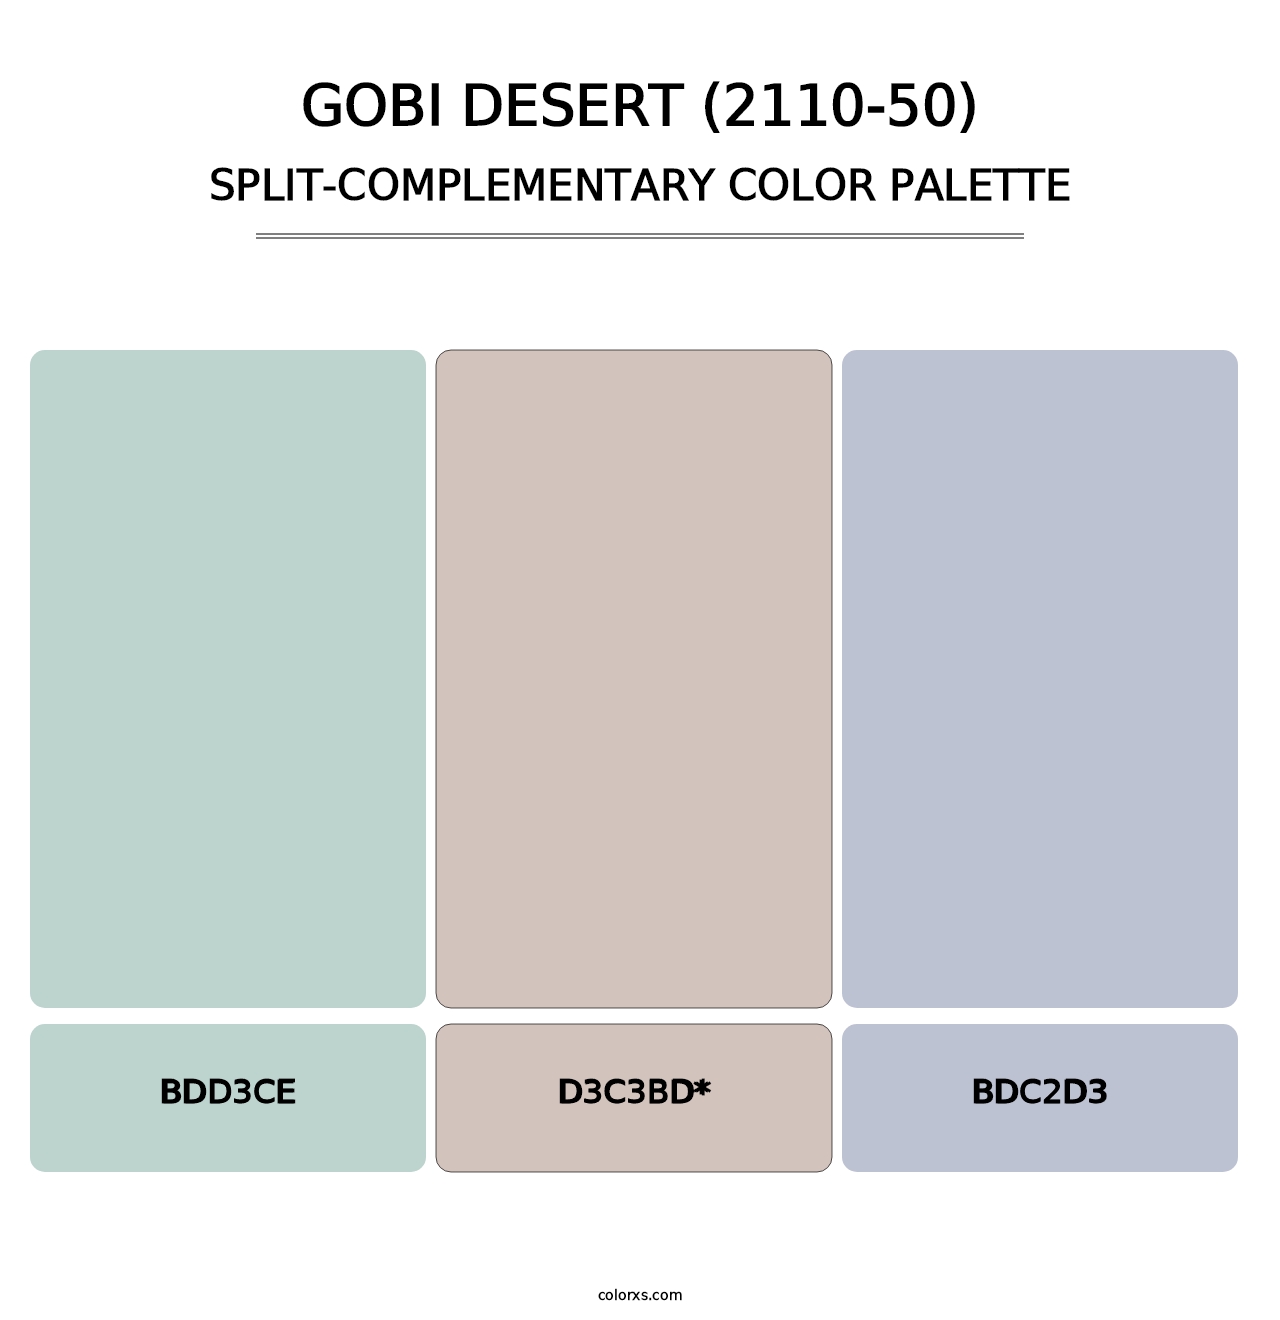 Gobi Desert (2110-50) - Split-Complementary Color Palette